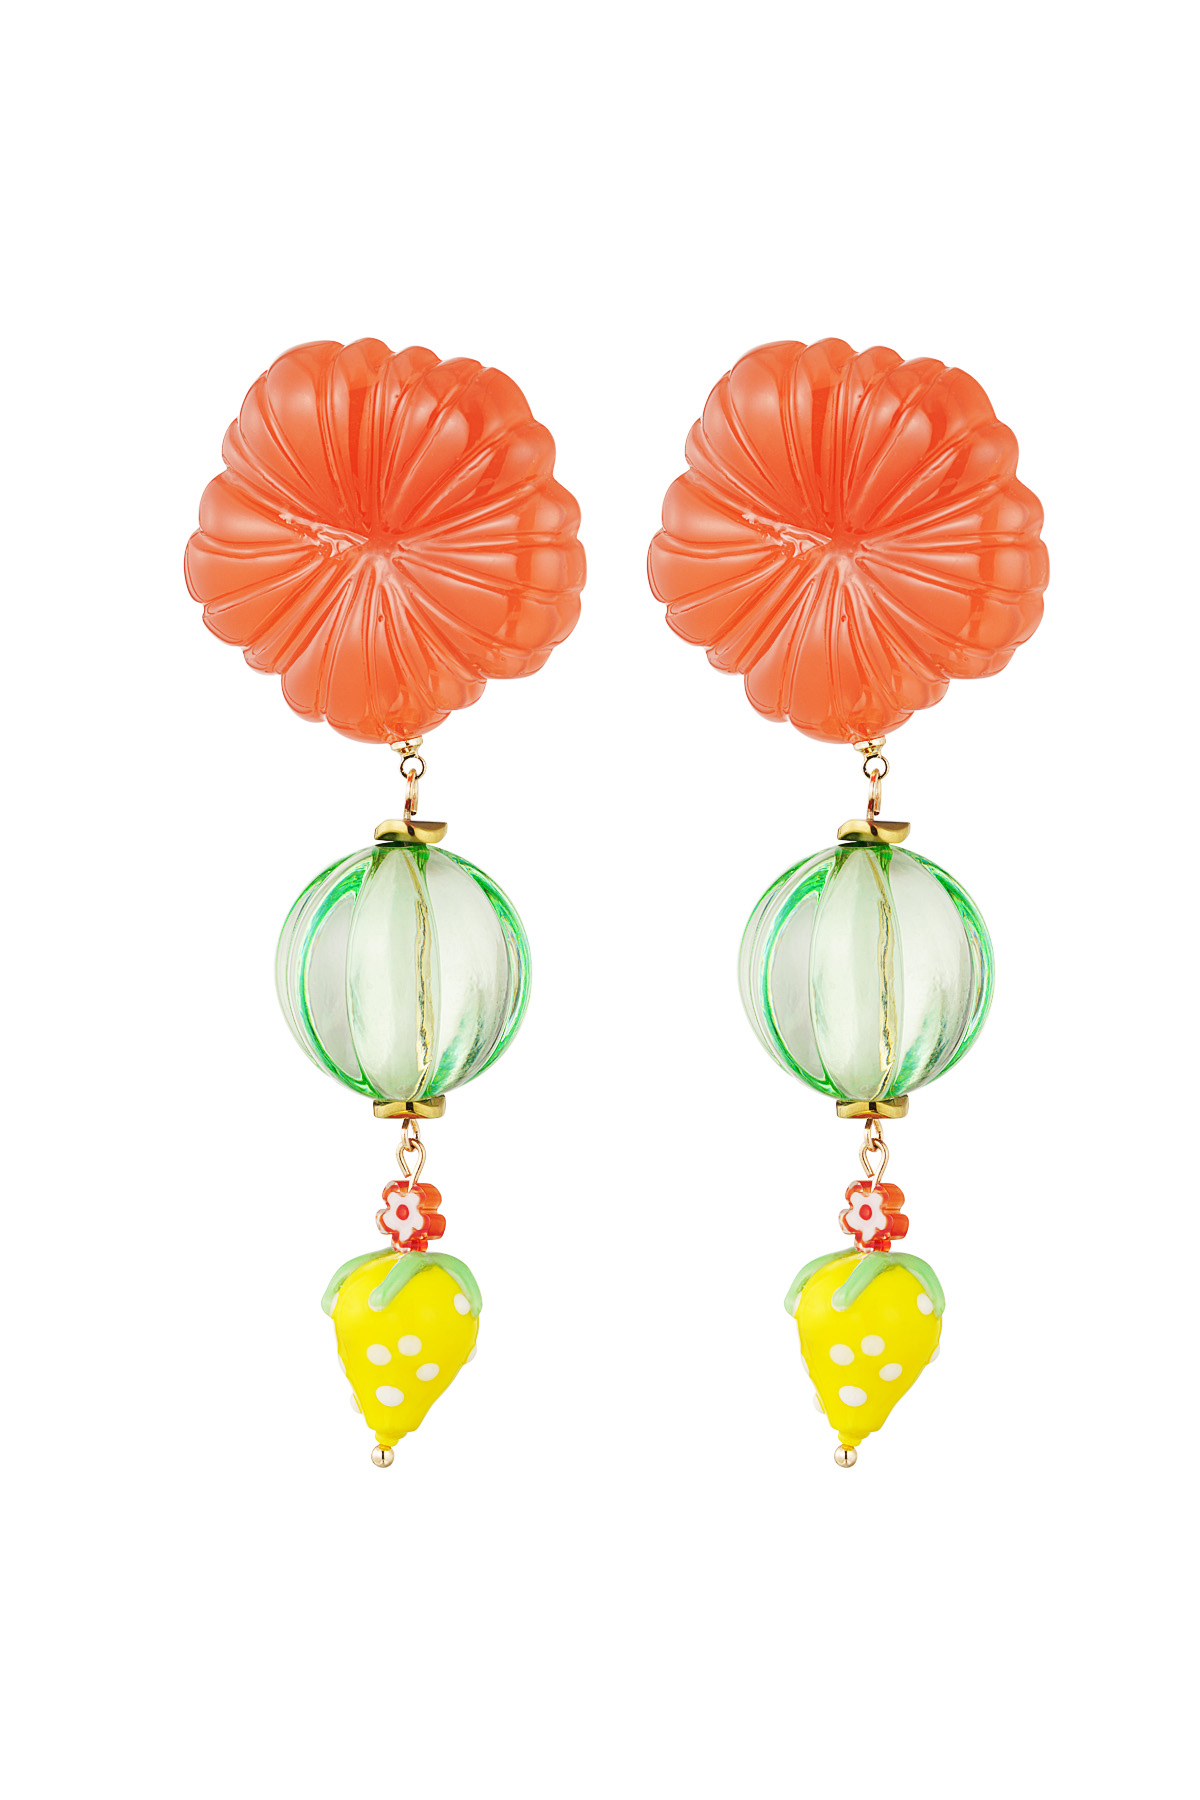 Strawberry love earrings - green orange